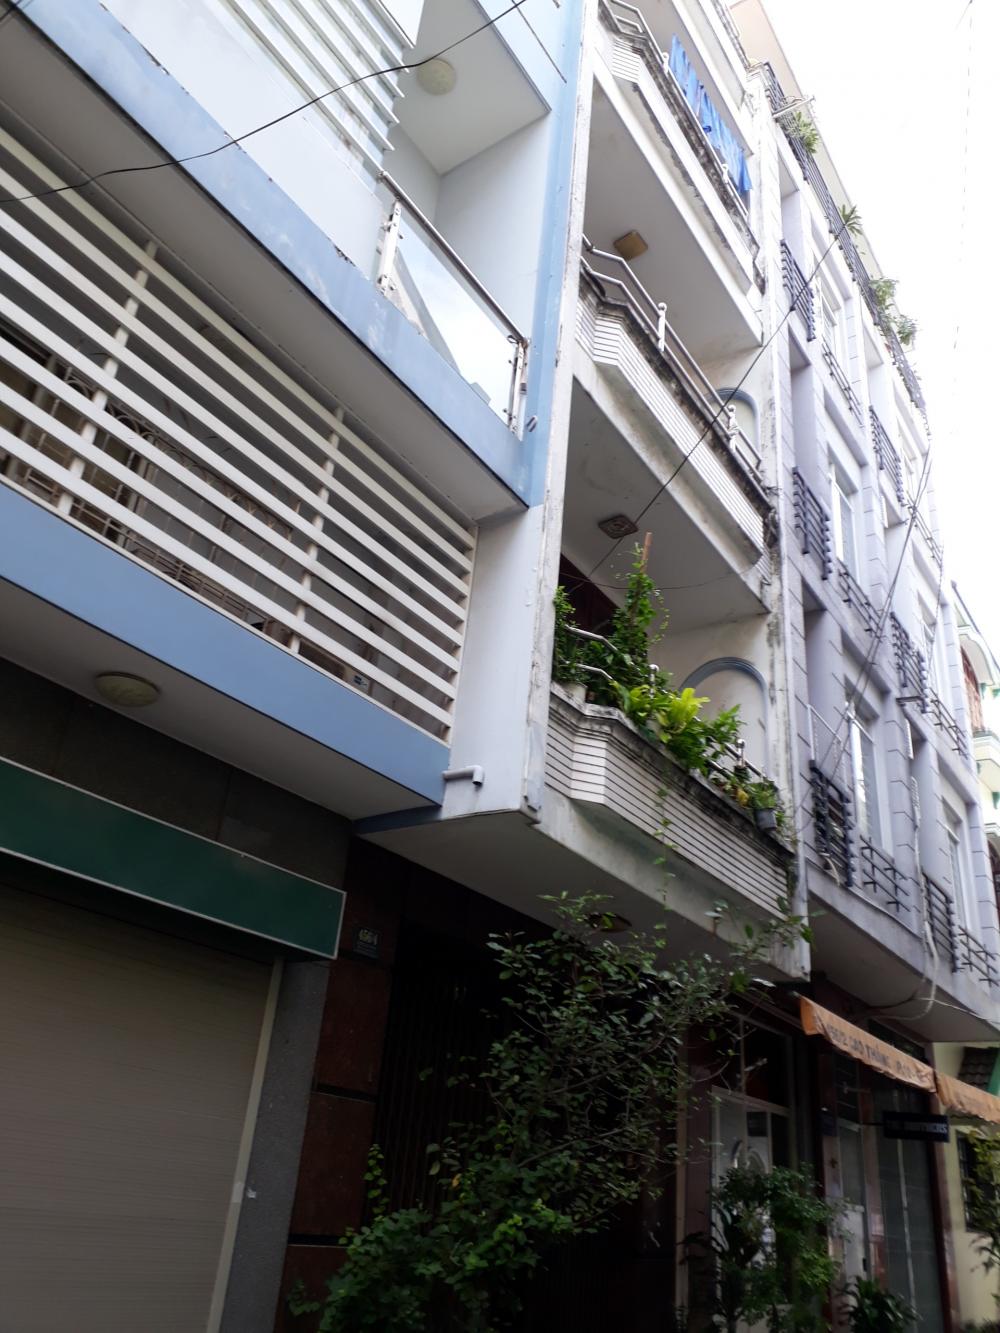 Bán nhà mặt tiền đường Lý Thường Kiệt, Q. 10, 4x20m, 2 lầu, giá rẻ nhất khu vực